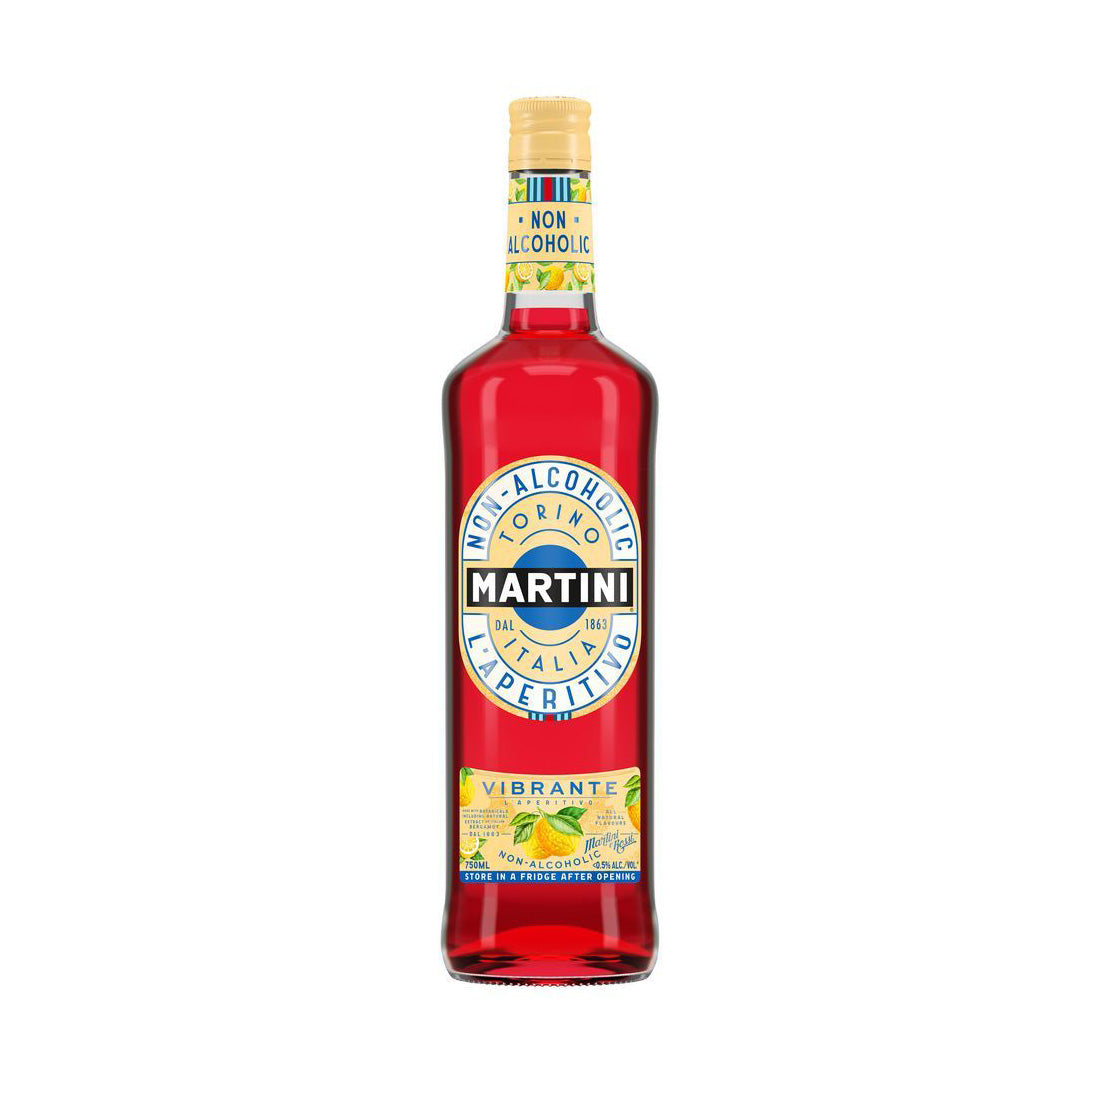 Martini Vibrante Low Alcohol - Non Alcoholic Spirit